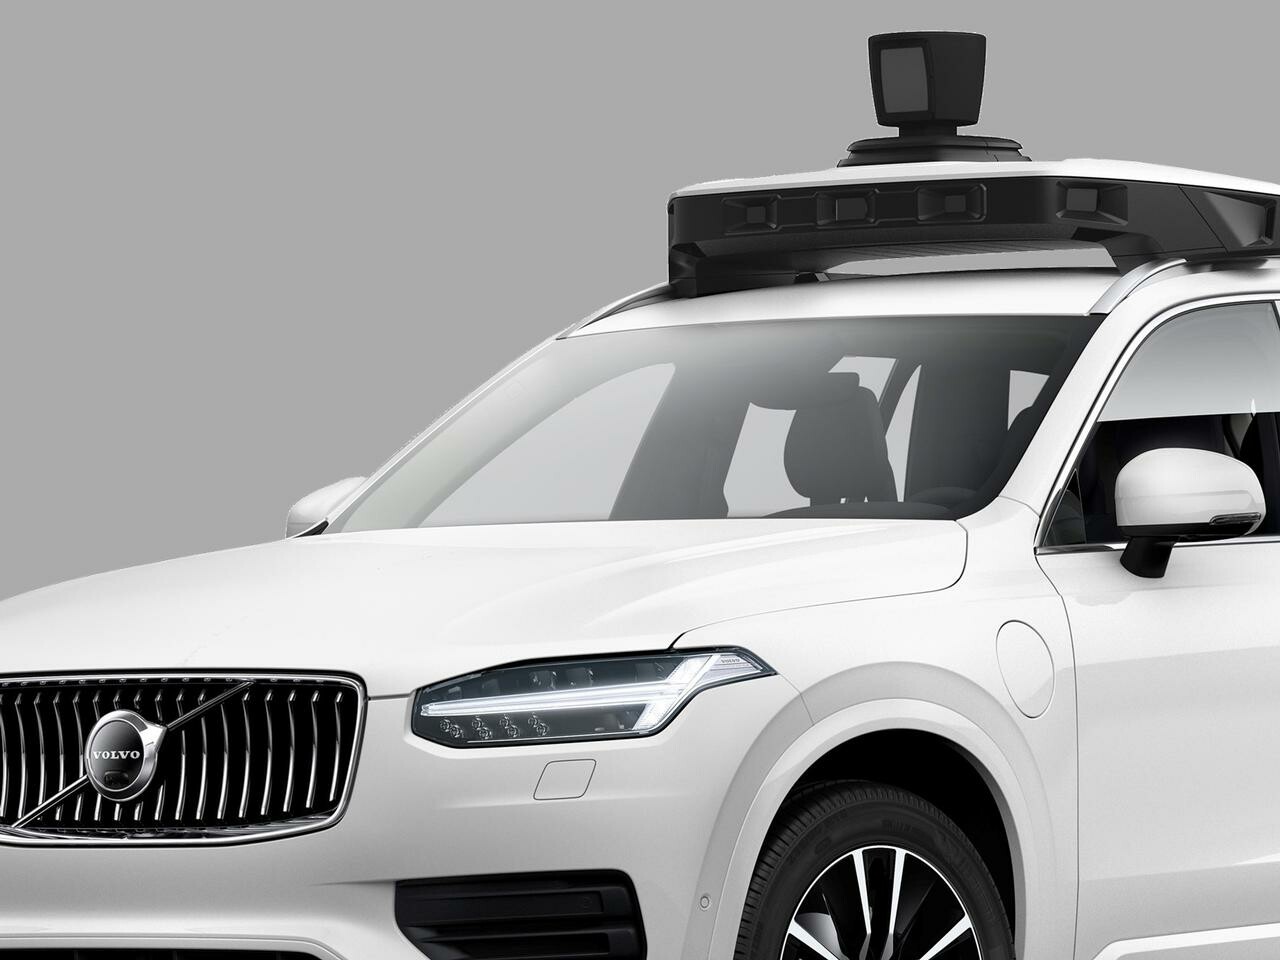 ボルボの自動運転技術、Uberとの共同開発でXC90に搭載。2020年代前半で新型車両にも導入